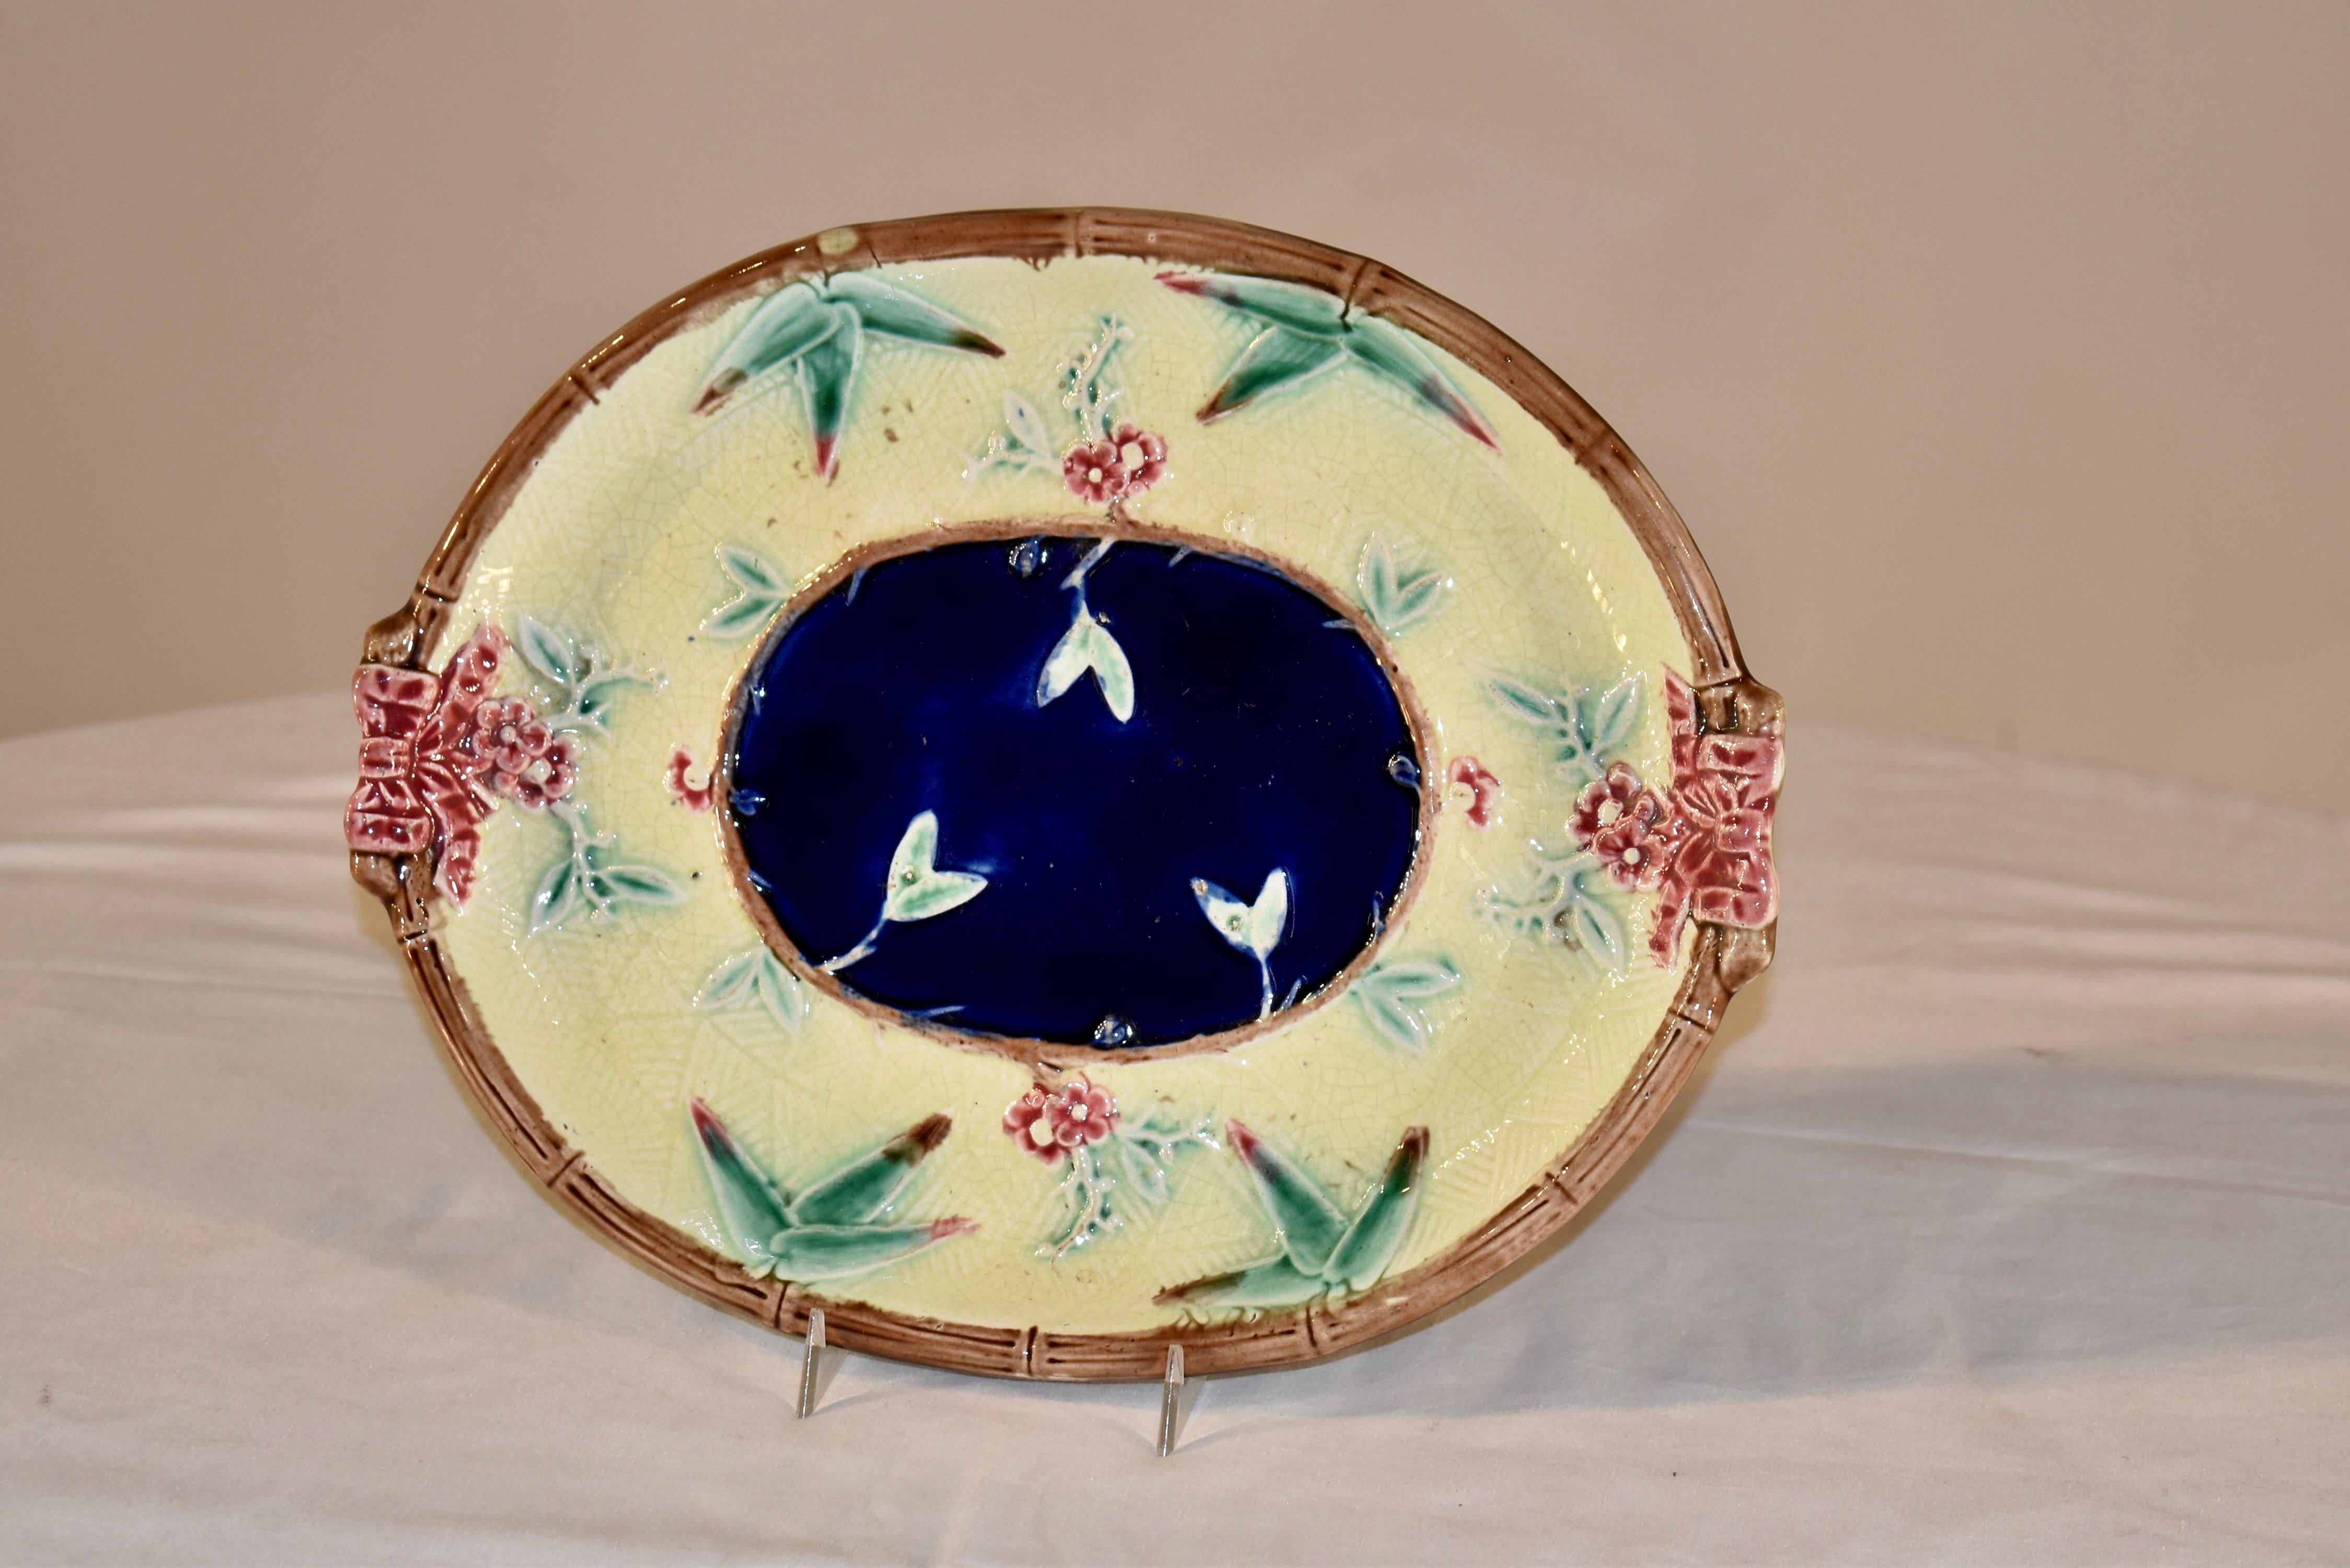 Majolika-Brotschale aus England aus dem 19. Jahrhundert in einer schönen Farbpalette.  Das zentrale Medaillon ist kobaltblau, umgeben von einer geformten Ranken- und Blattbordüre, umgeben von einem wunderschönen blassgelben Band, ebenfalls umgeben